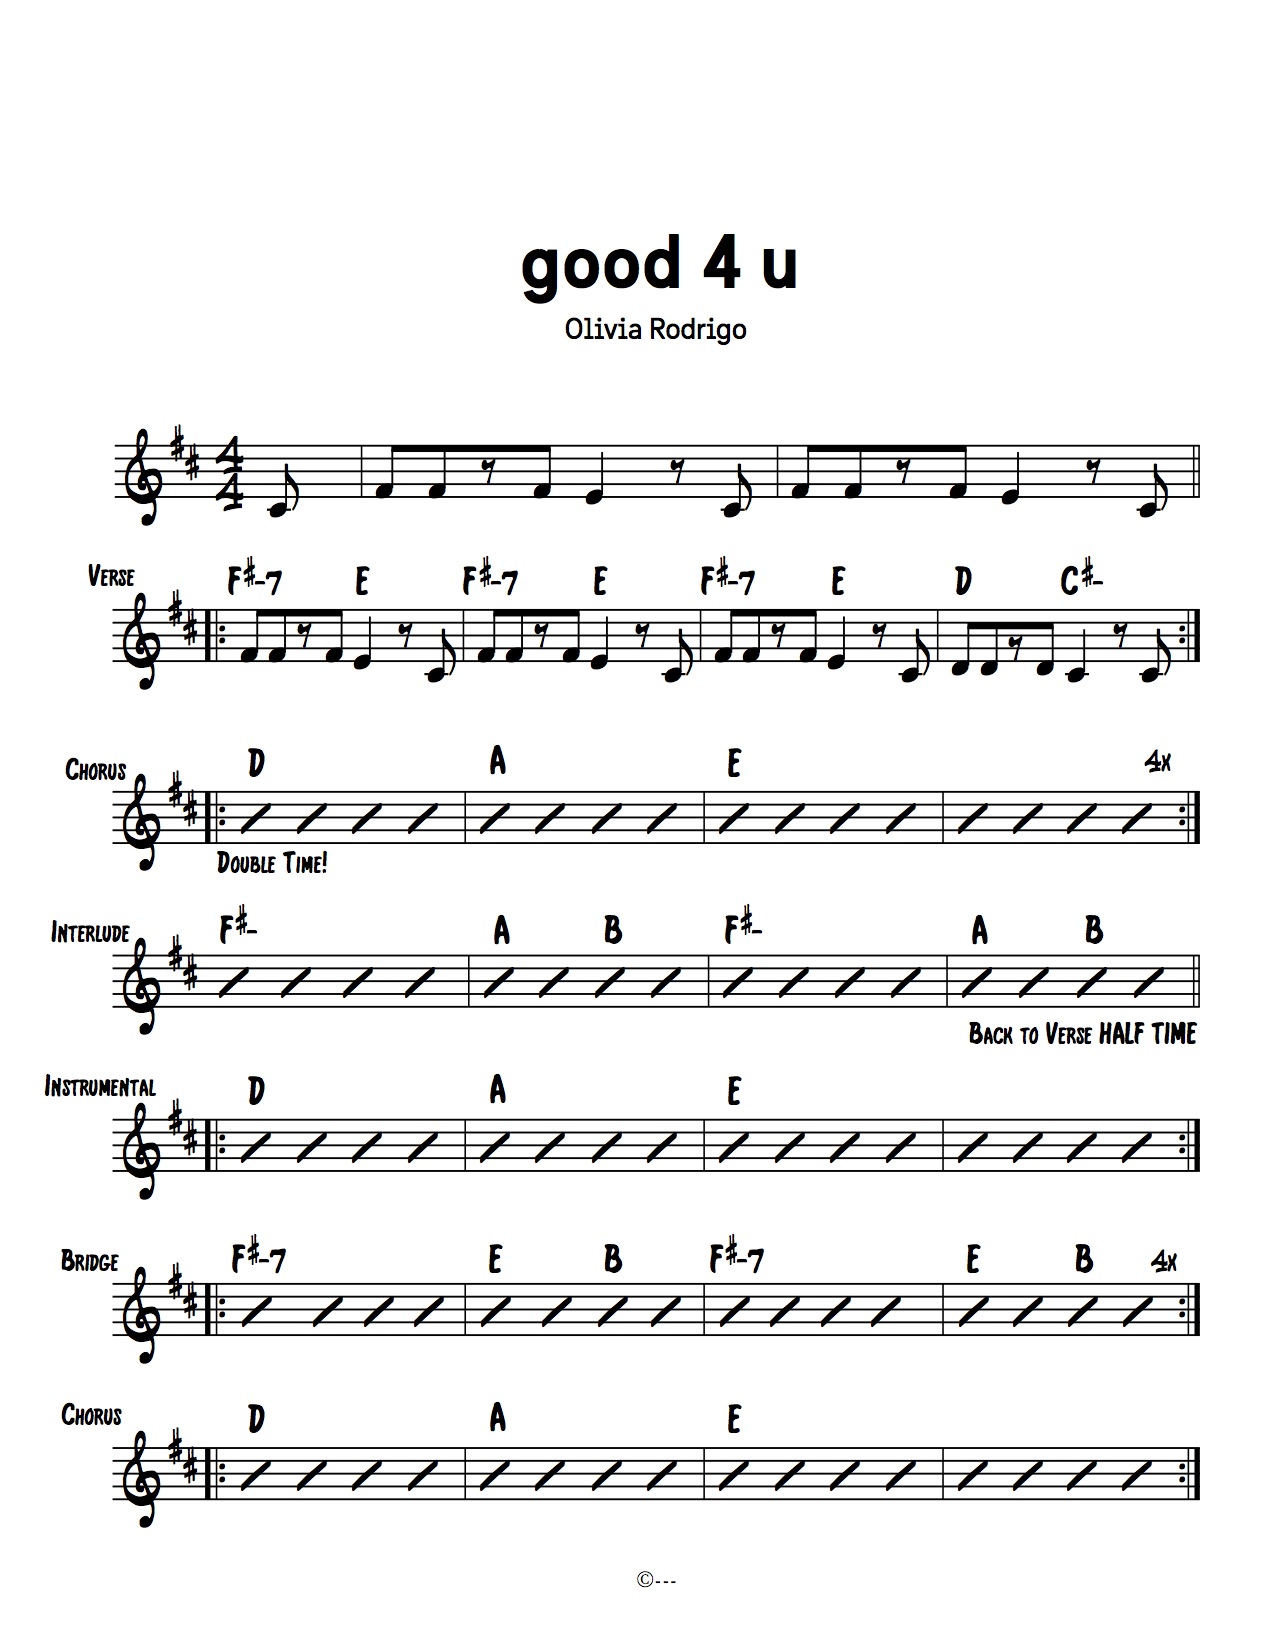 Good 4 u chords